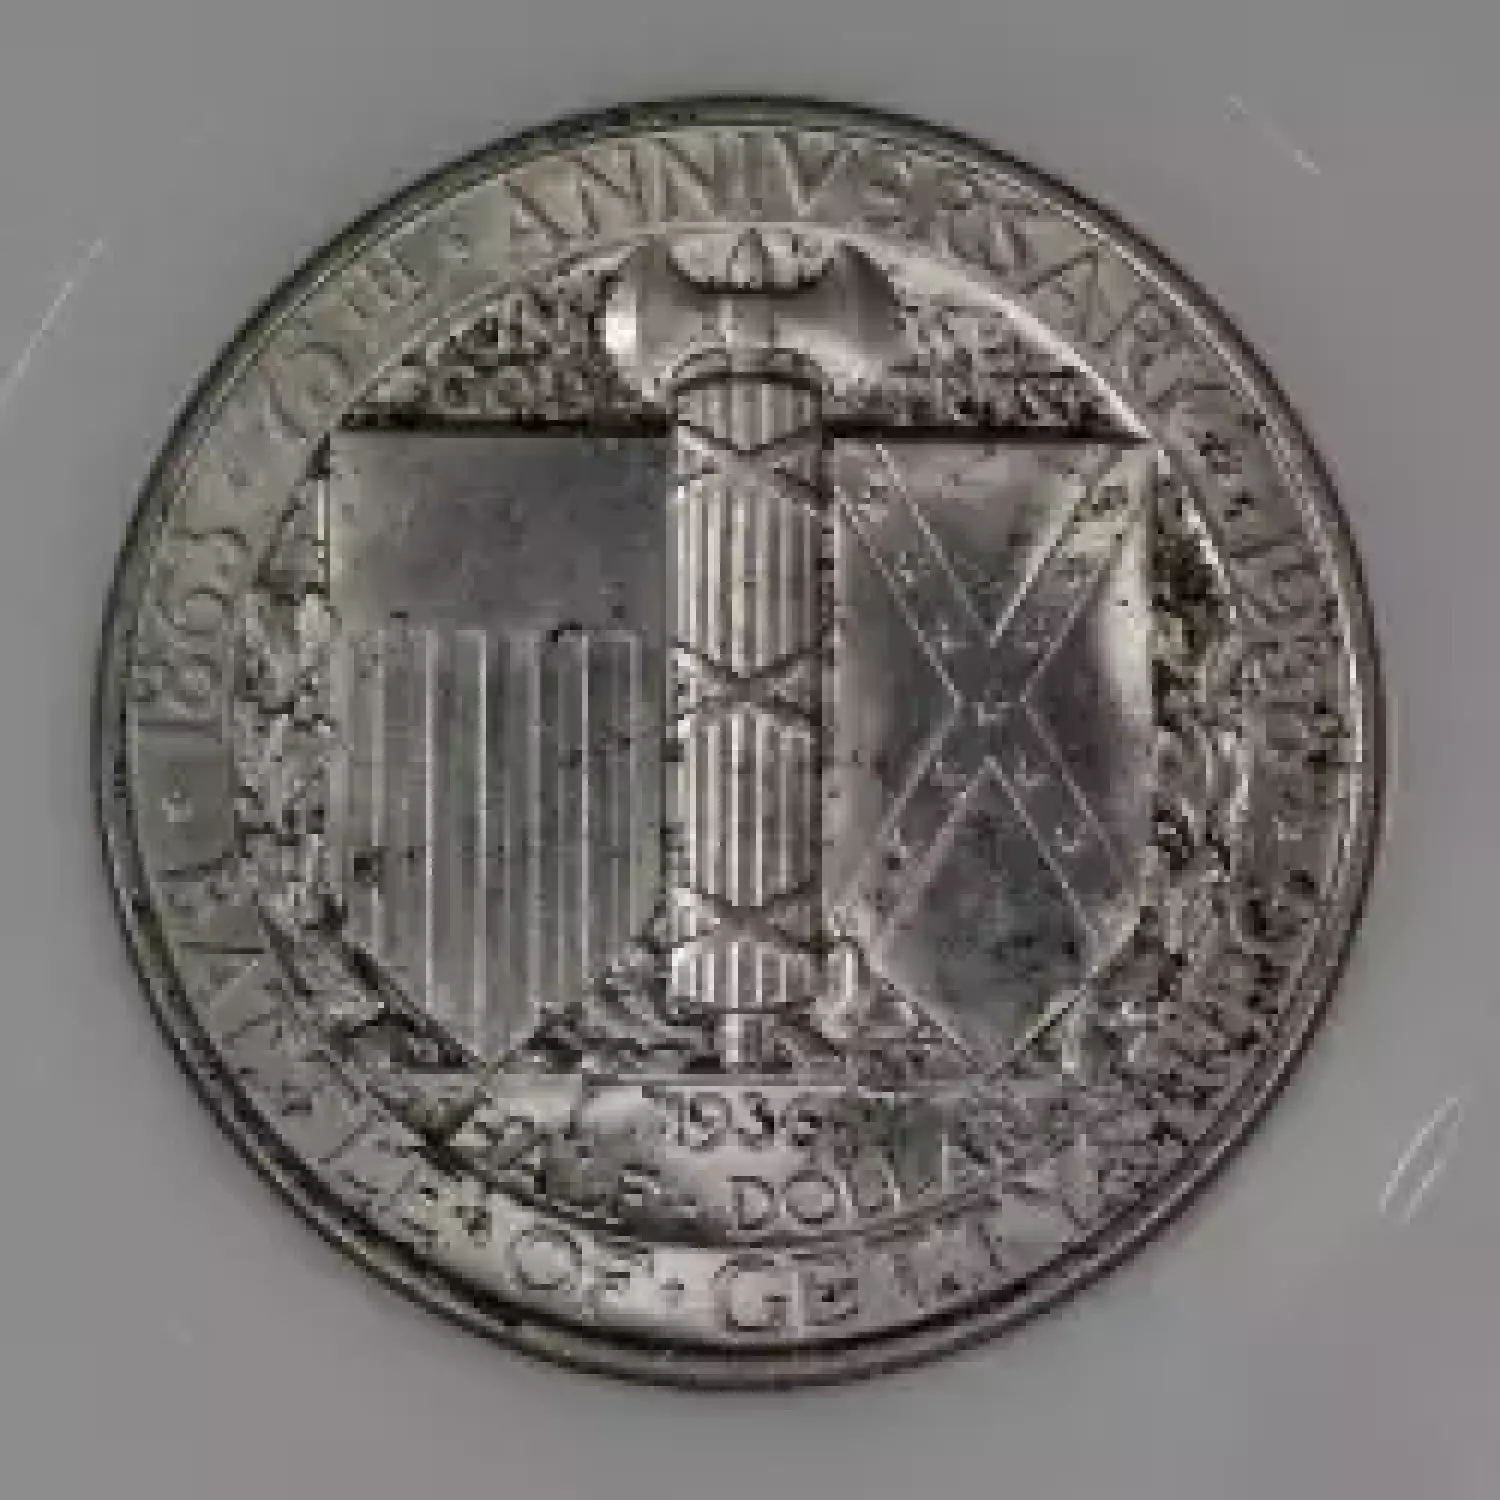 1936-PHILADELPHIA GETTYSBURG NGC MS-65 - Kearney Coin Center